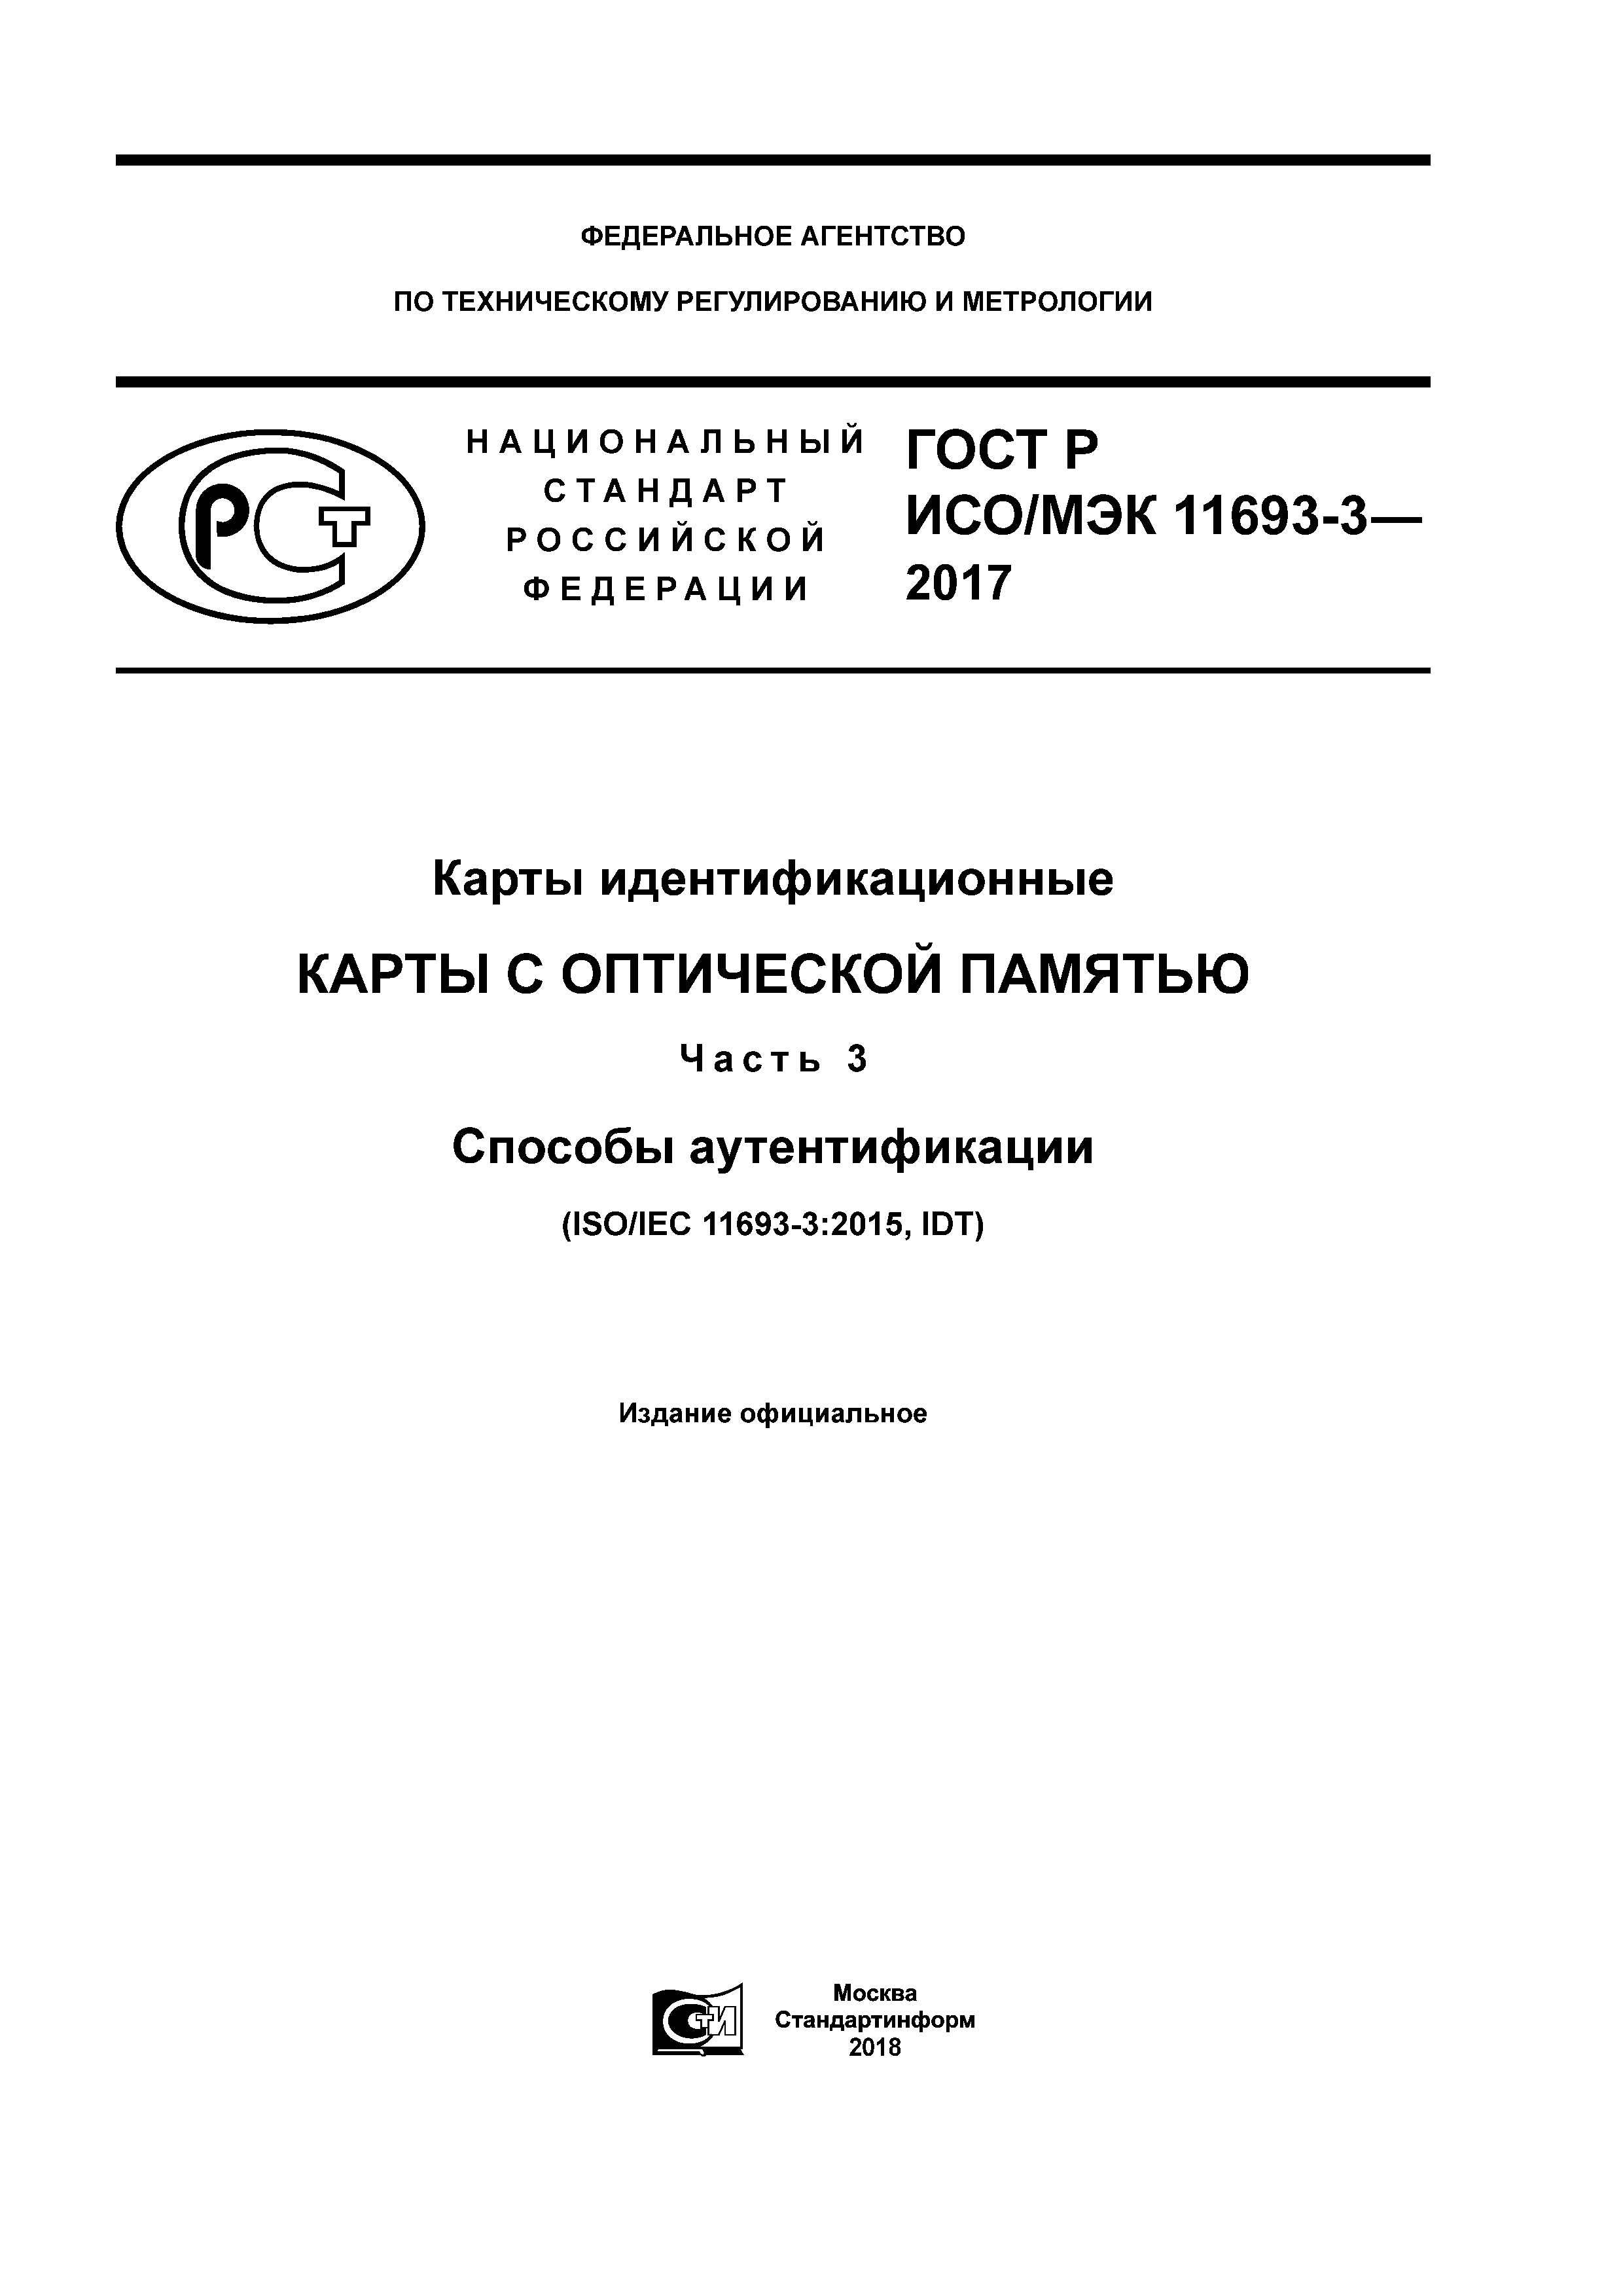 ГОСТ Р ИСО/МЭК 11693-3-2017